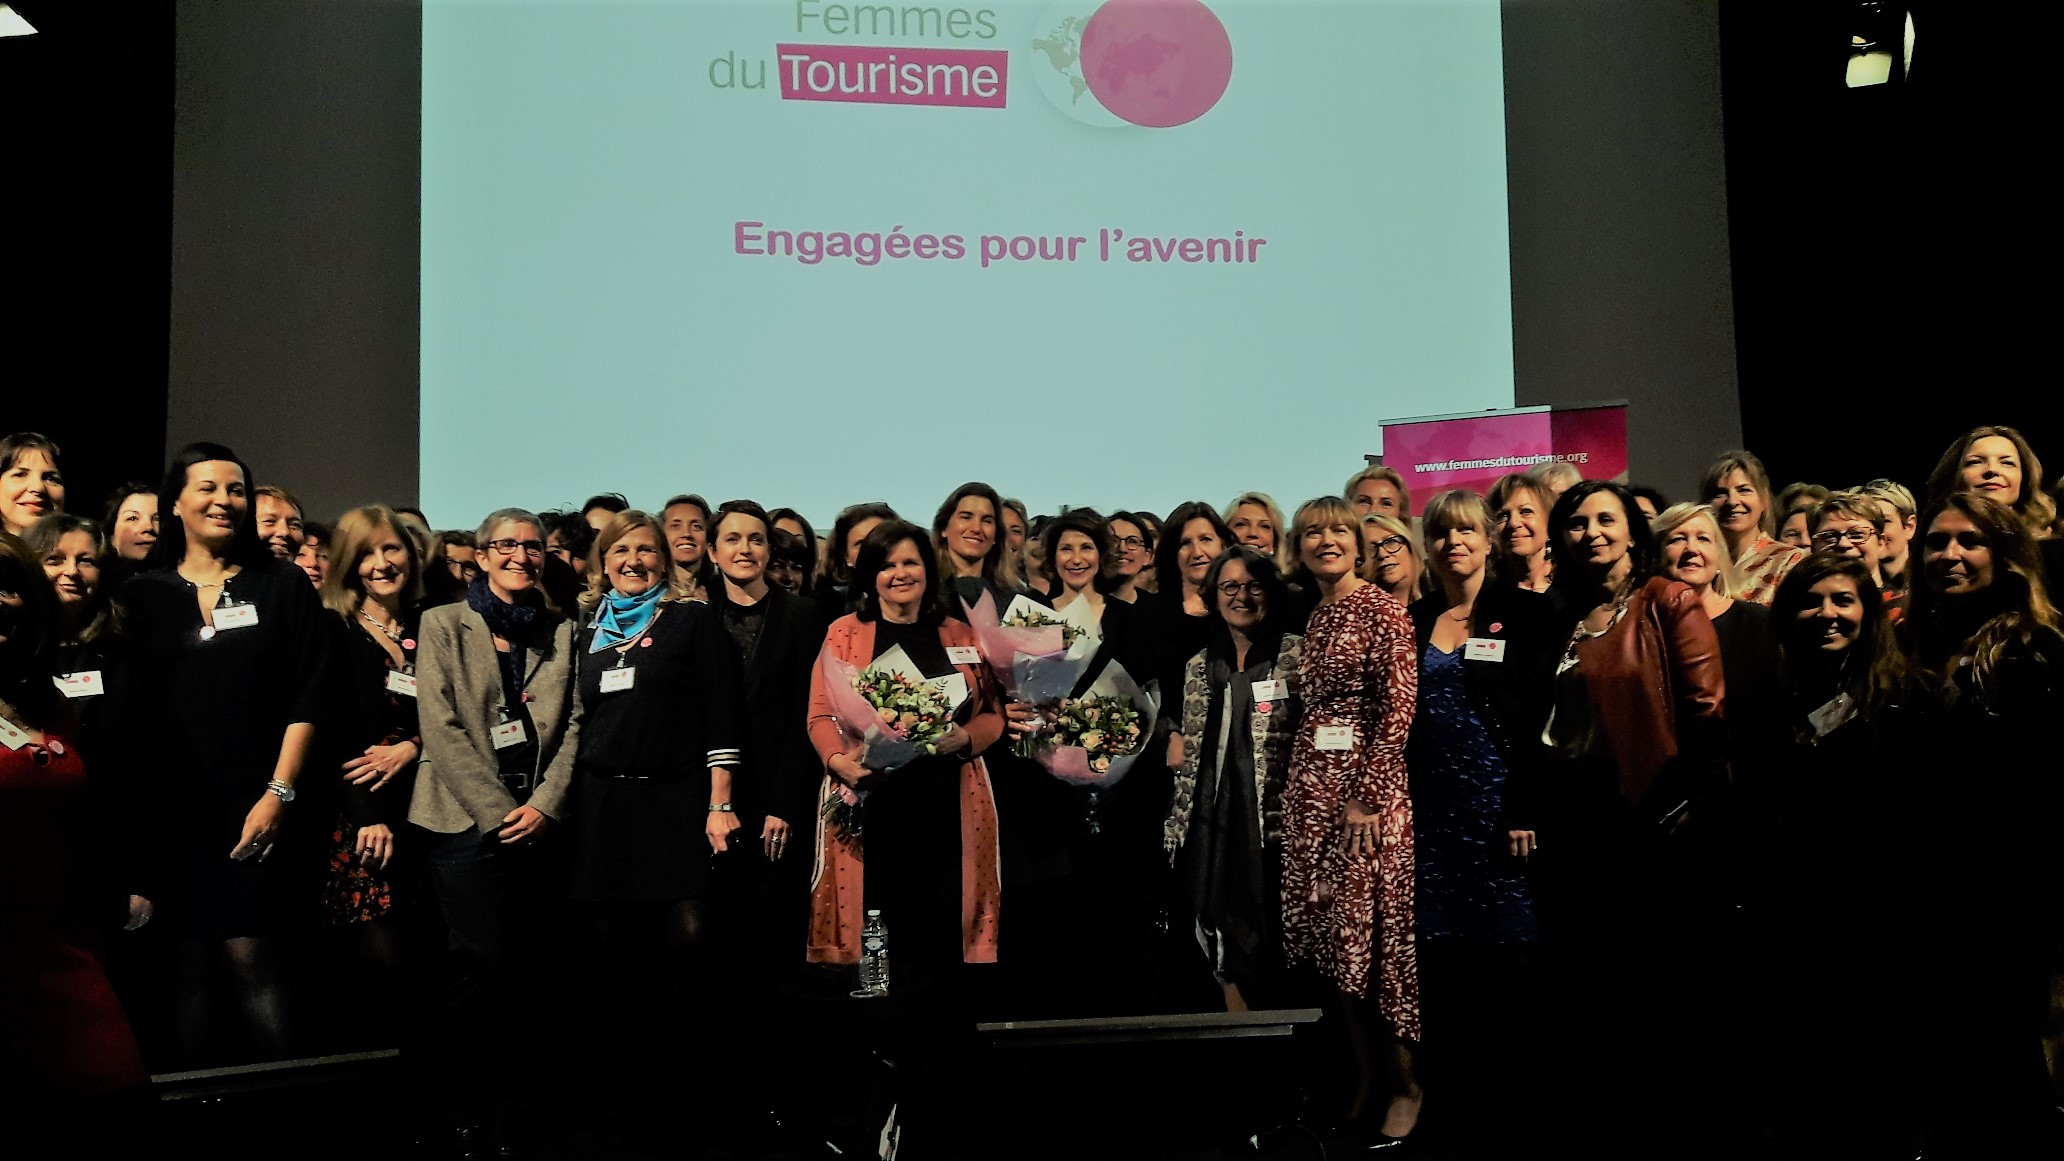 Autour des trois lauréates (avec les bouquets) on reconnait Agnès Gascoin et Christine Giraud, l'ancienne et la nouvelle présidentes ainsi qu'une partie des membres de l'association Femmes du Tourisme.MS.